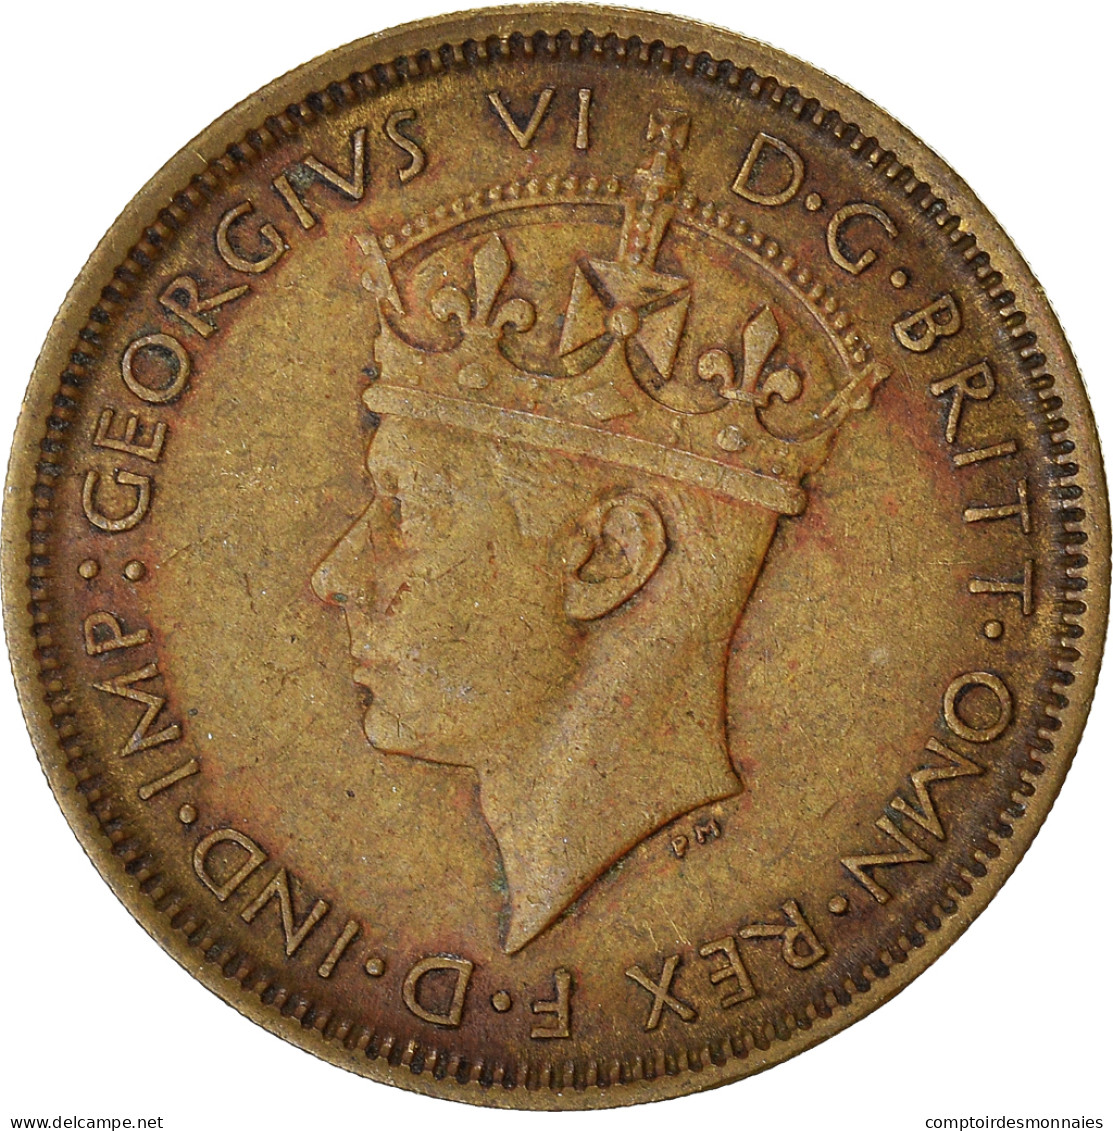 Monnaie, Afrique Occidentale Britannique, Shilling, 1943 - Colonie